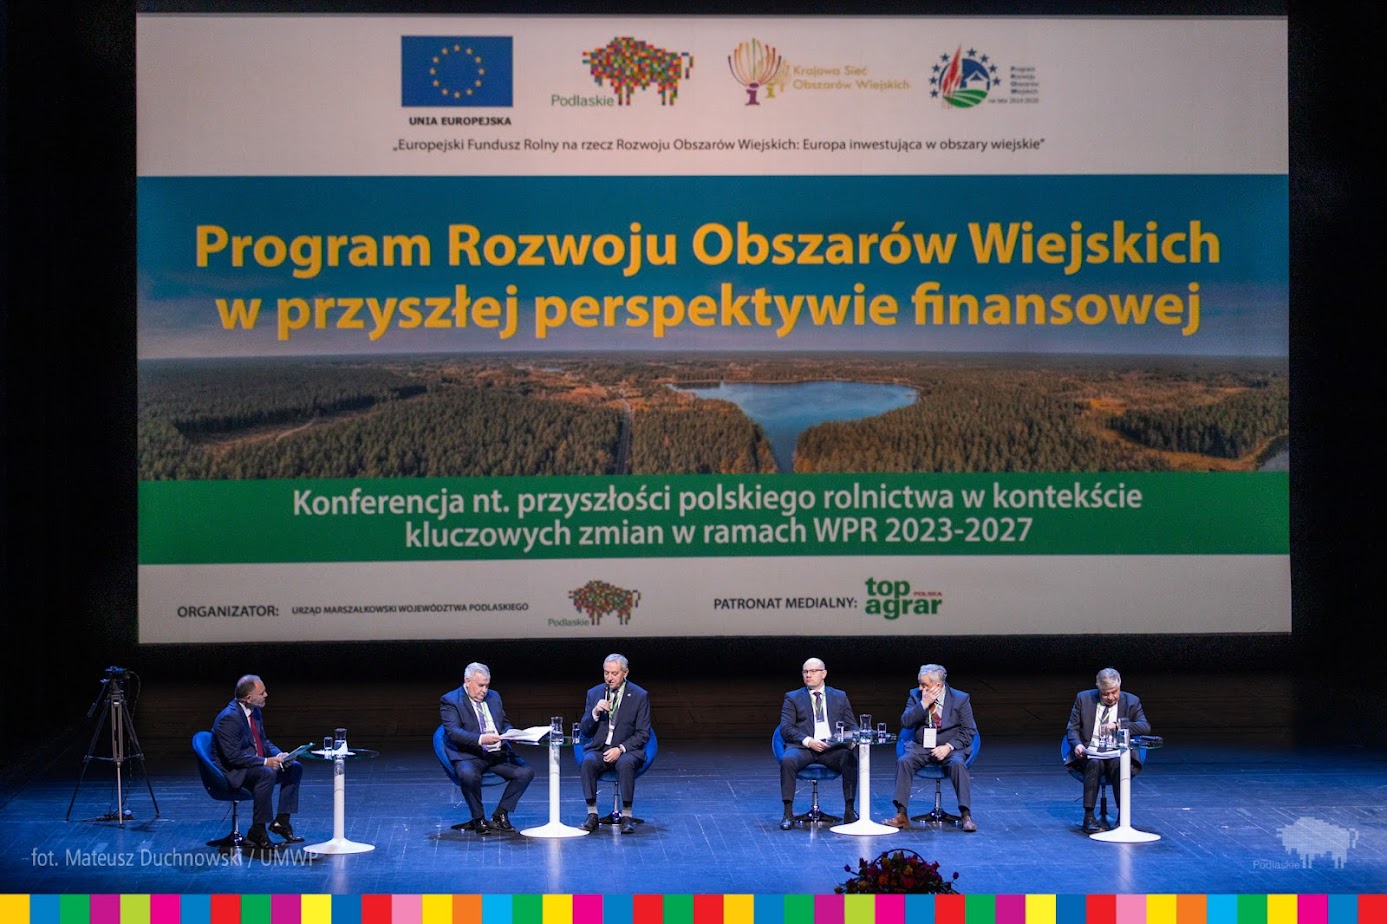 31.03.2022 r. Konferencja nt. przyszłości polskiego rolnictwa w kontekście kluczowych zmian w ramach WPR na lata 2023-2027; wydarzenie było podzielone na trzy panele dyskusyjne z udziałem polityków, samorządowców i ekspertów tematu agrokultury.